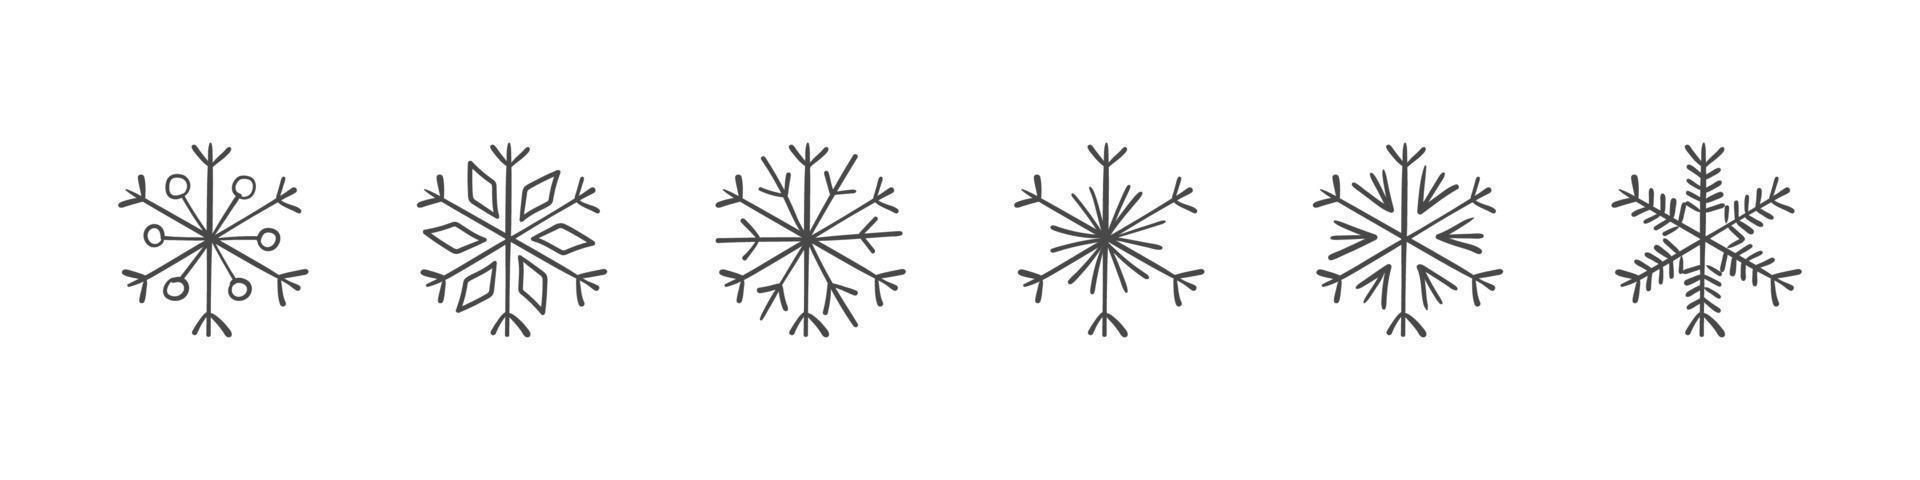 flocons de neige. ensemble de flocons de neige dessinés à la main. éléments de conception pour noël et nouvel an. éléments vectoriels vecteur